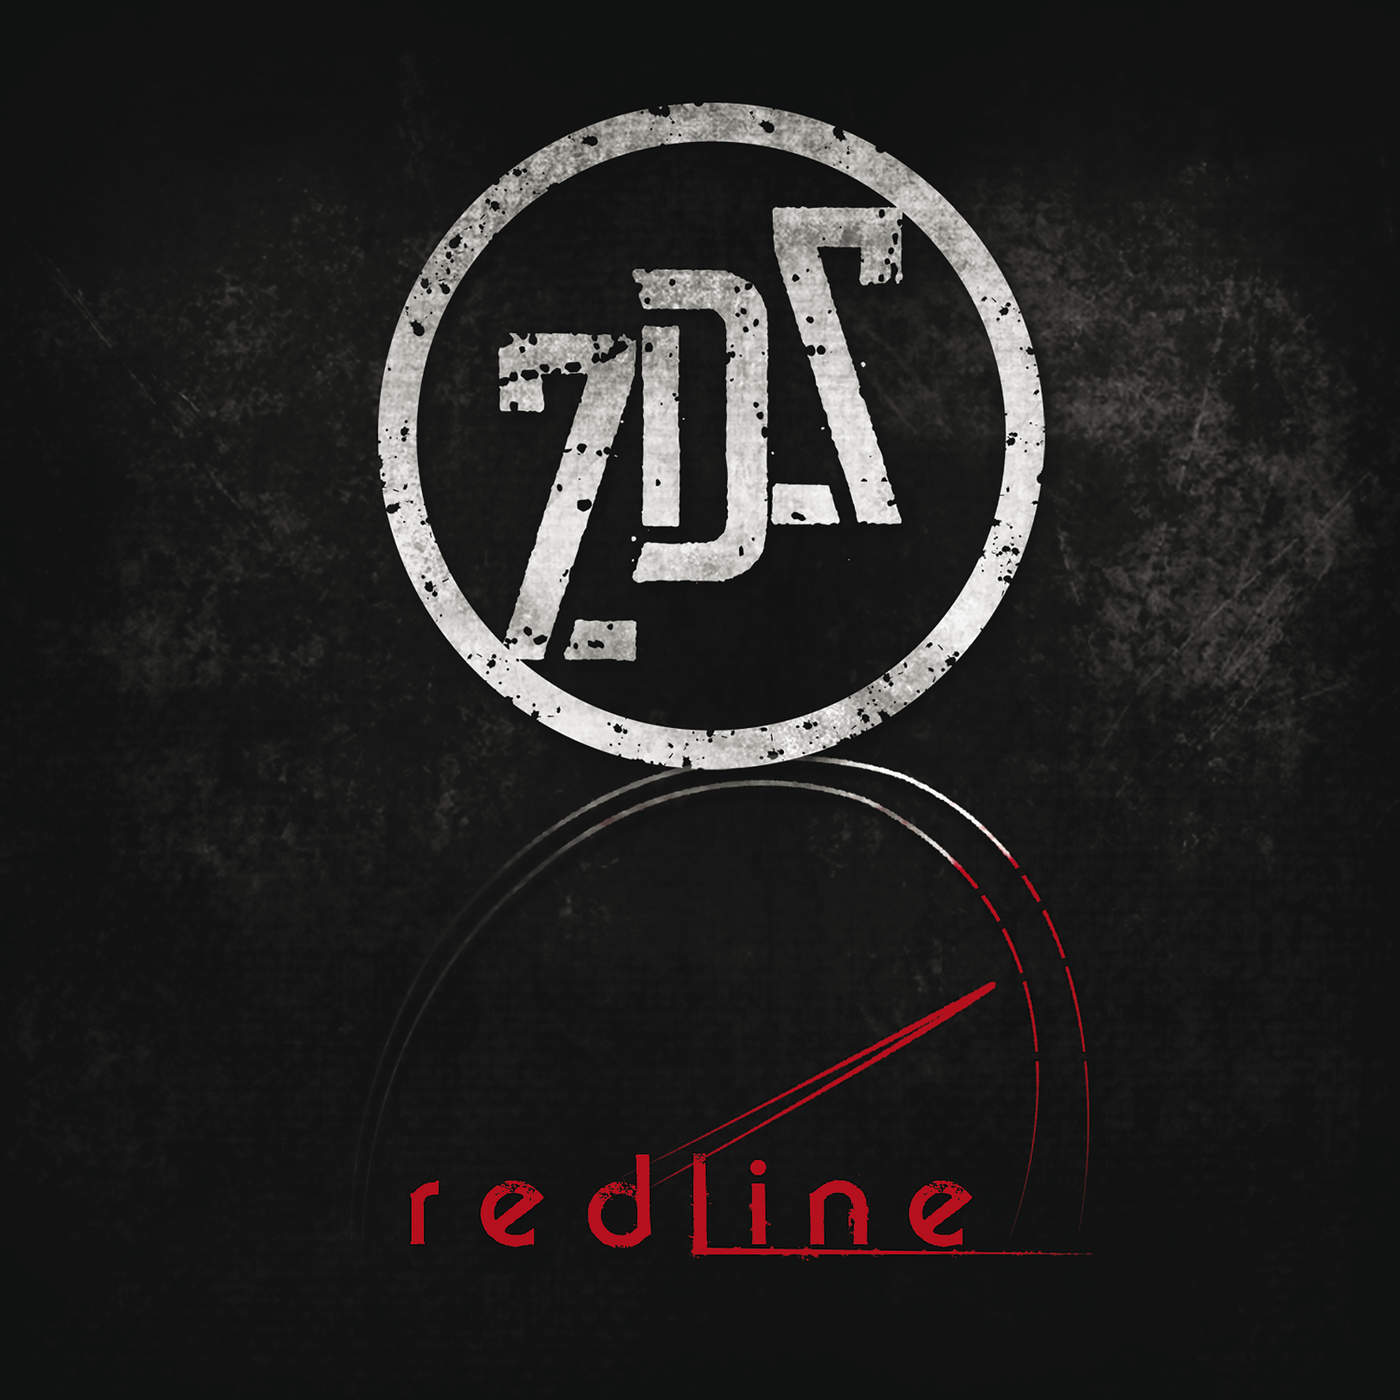 Seventh Day Slumber - Redline (2015) Album Info